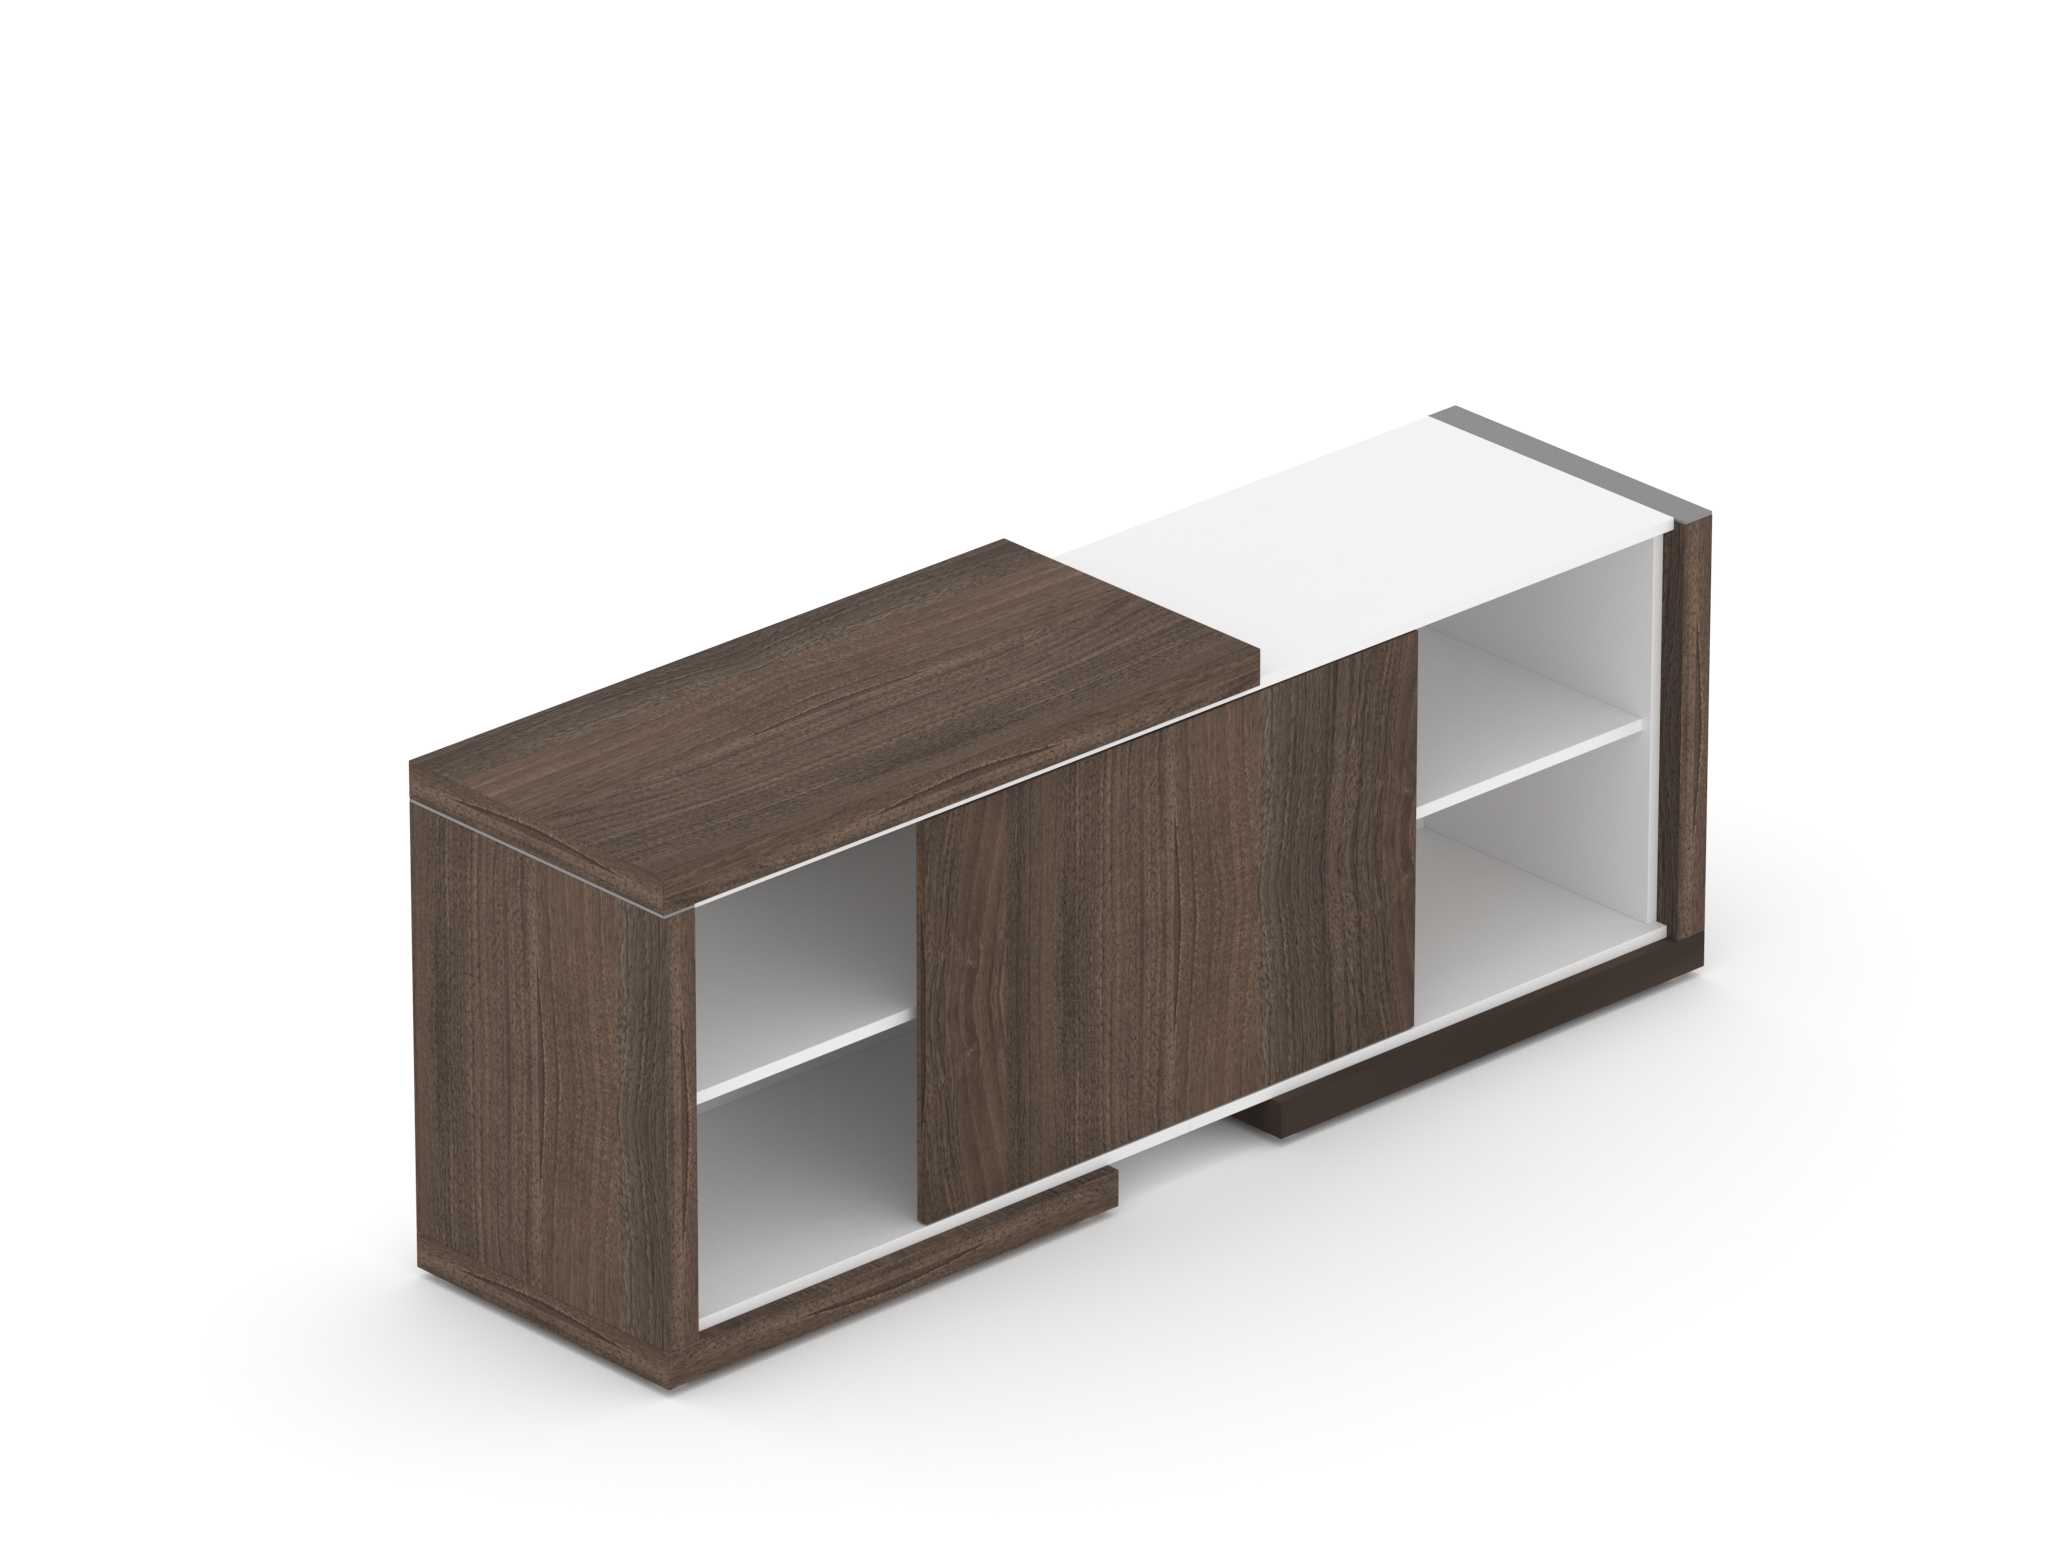 Komoda SOLID pro manažerský opěrný stůl, s posuvnými dveřmi, 170cm (Komoda SOLID pro manažerský opěrný stůl, s posuvnými dveřmi, délka 170cm, hloubka 50cm)